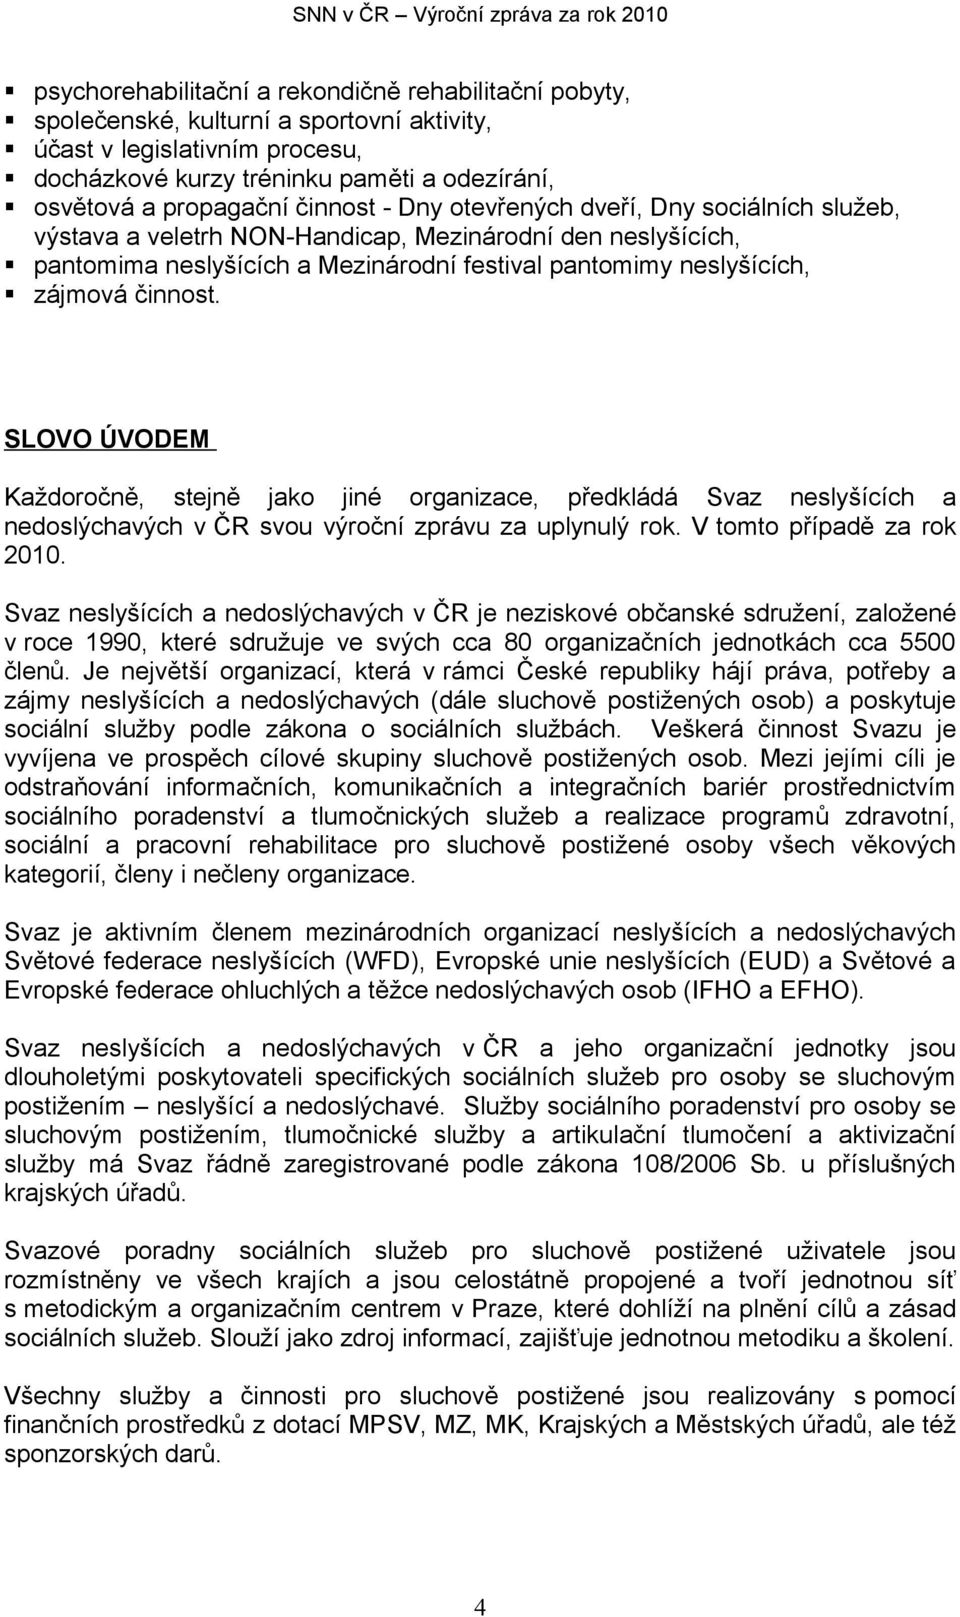 SLOVO ÚVODEM Každoročně, stejně jako jiné organizace, předkládá Svaz neslyšících a nedoslýchavých v ČR svou výroční zprávu za uplynulý rok. V tomto případě za rok 2010.